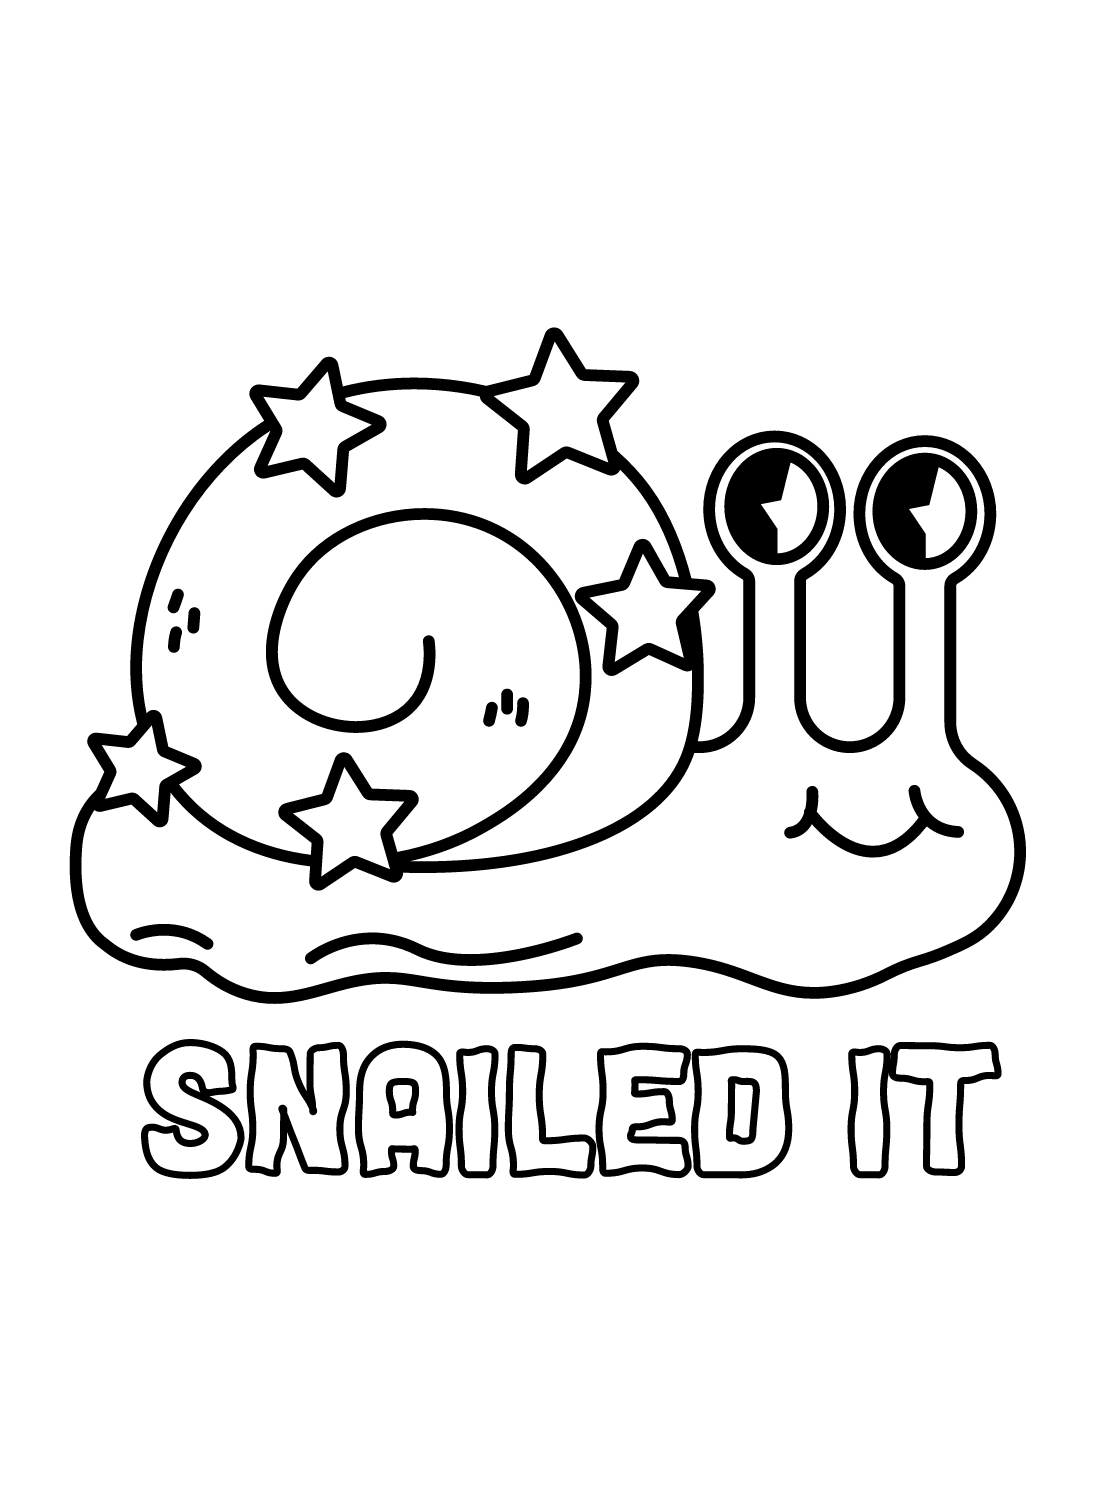 蜗牛卡通蜗牛